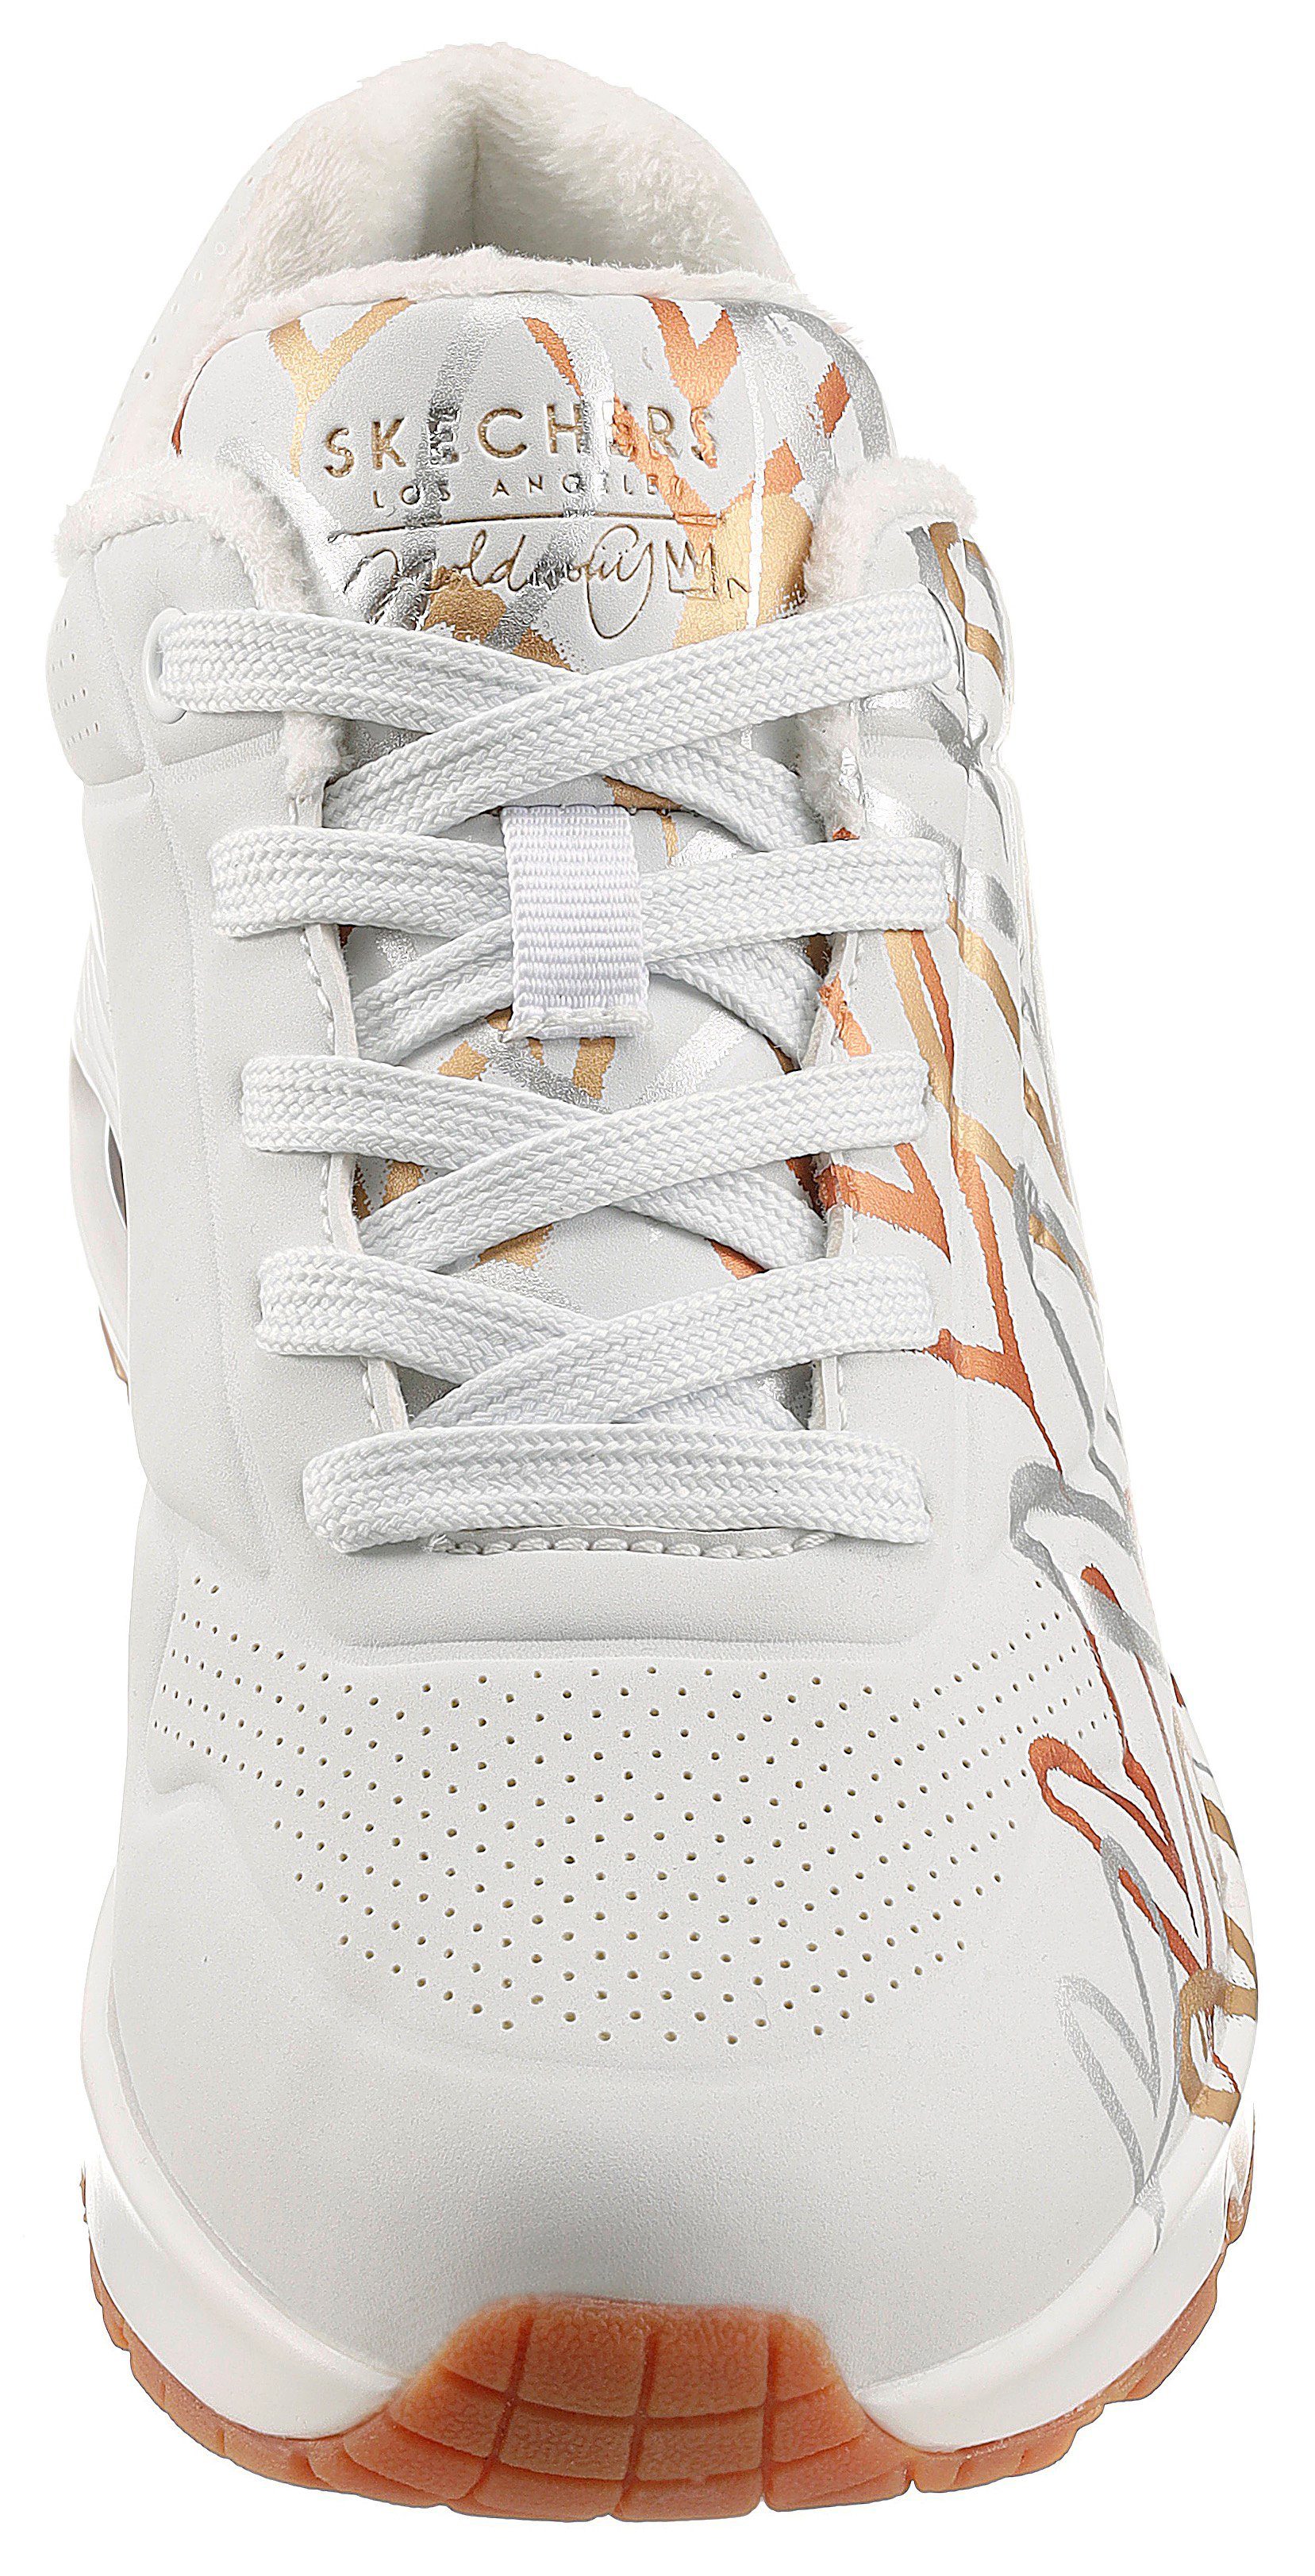 Skechers UNO Sneaker trendigen weiß-goldfarben LOVE - METALLIC Metallic-Print mit